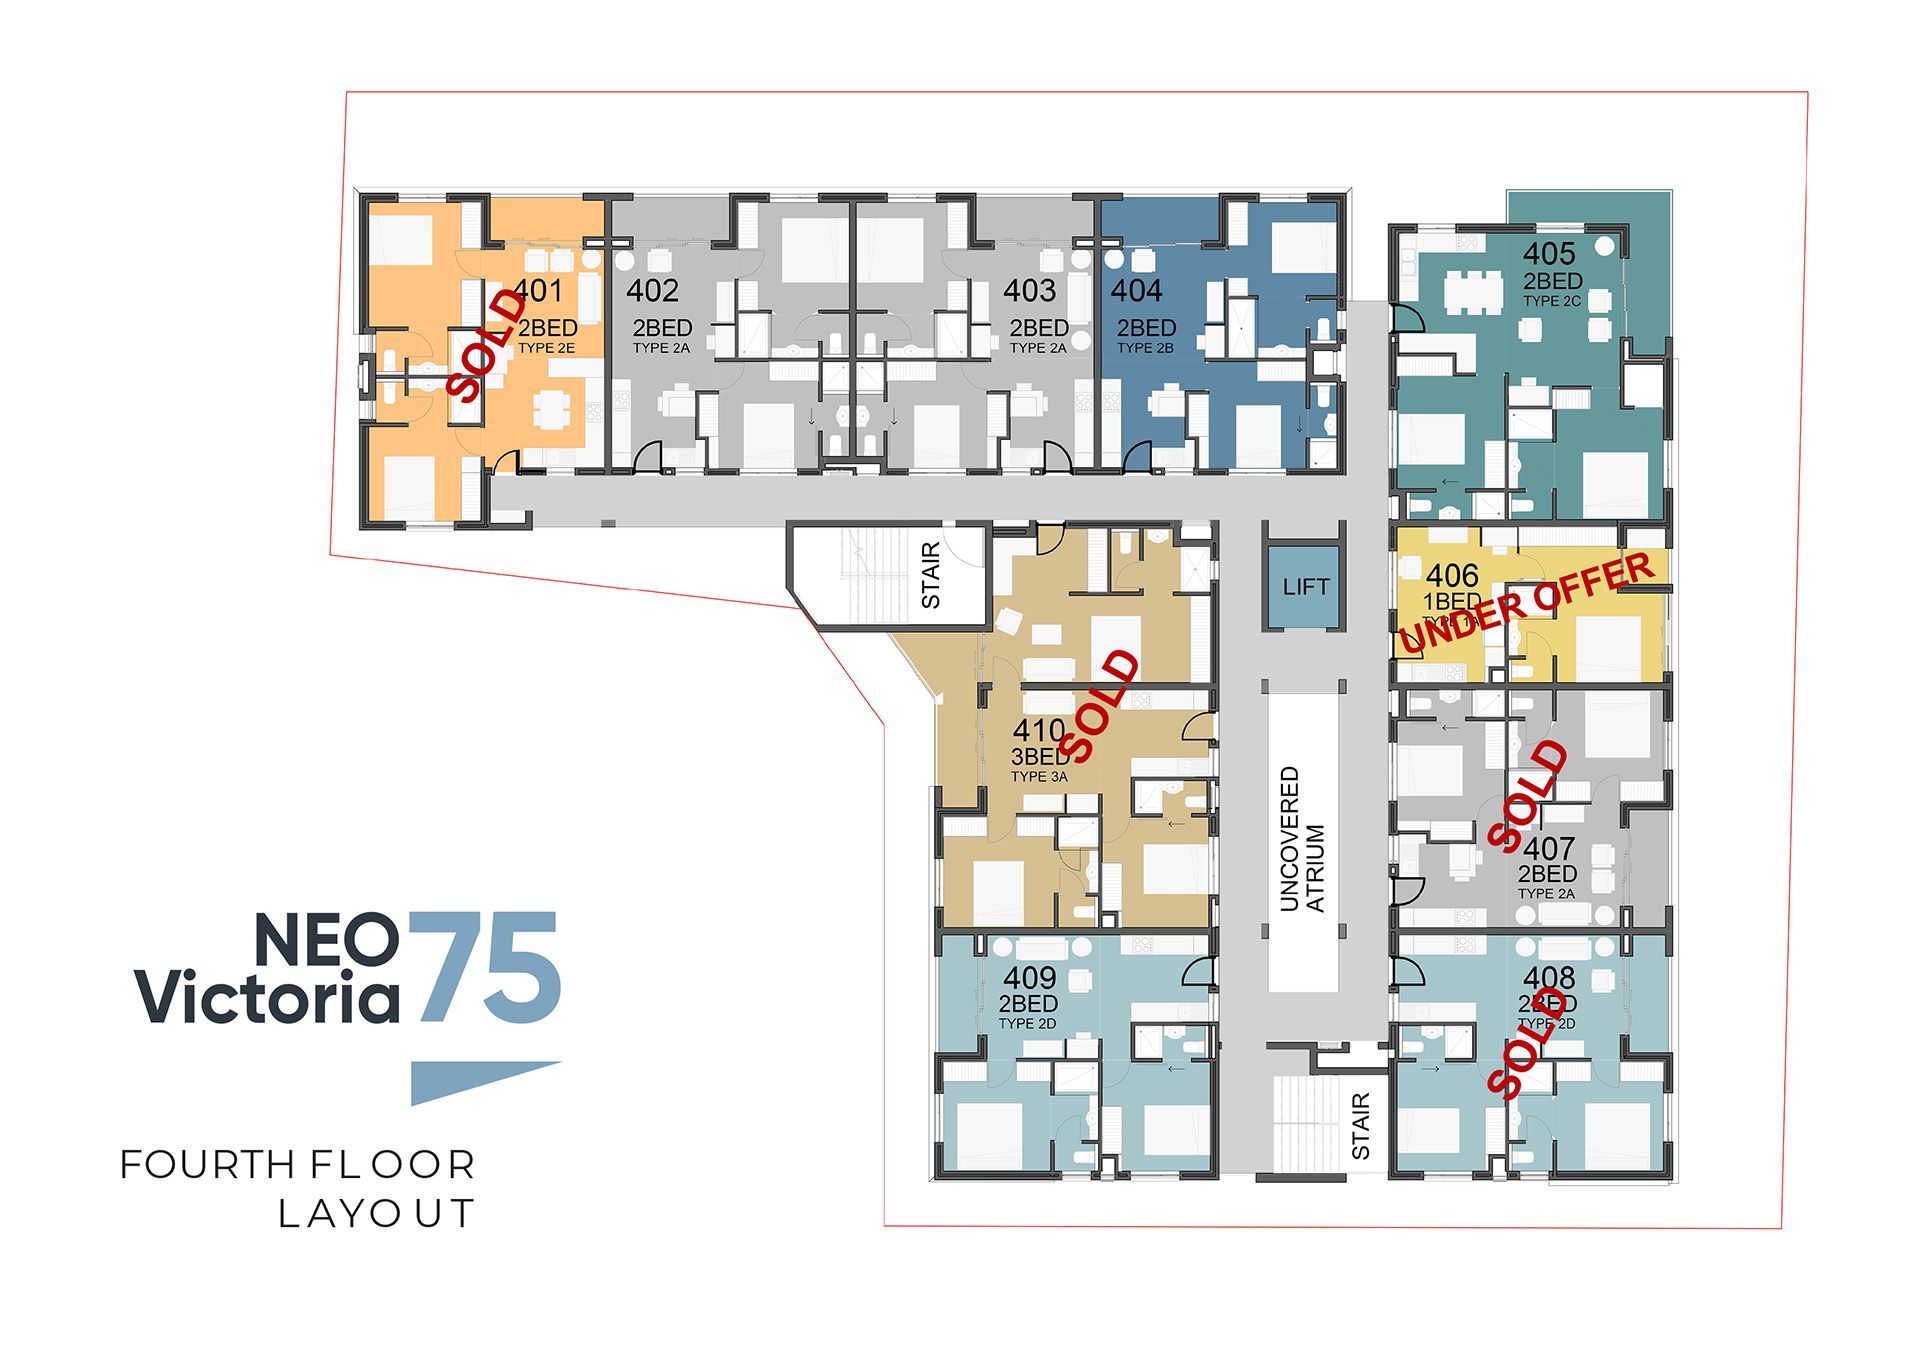 NeoVictoria Fourth Floor Layout